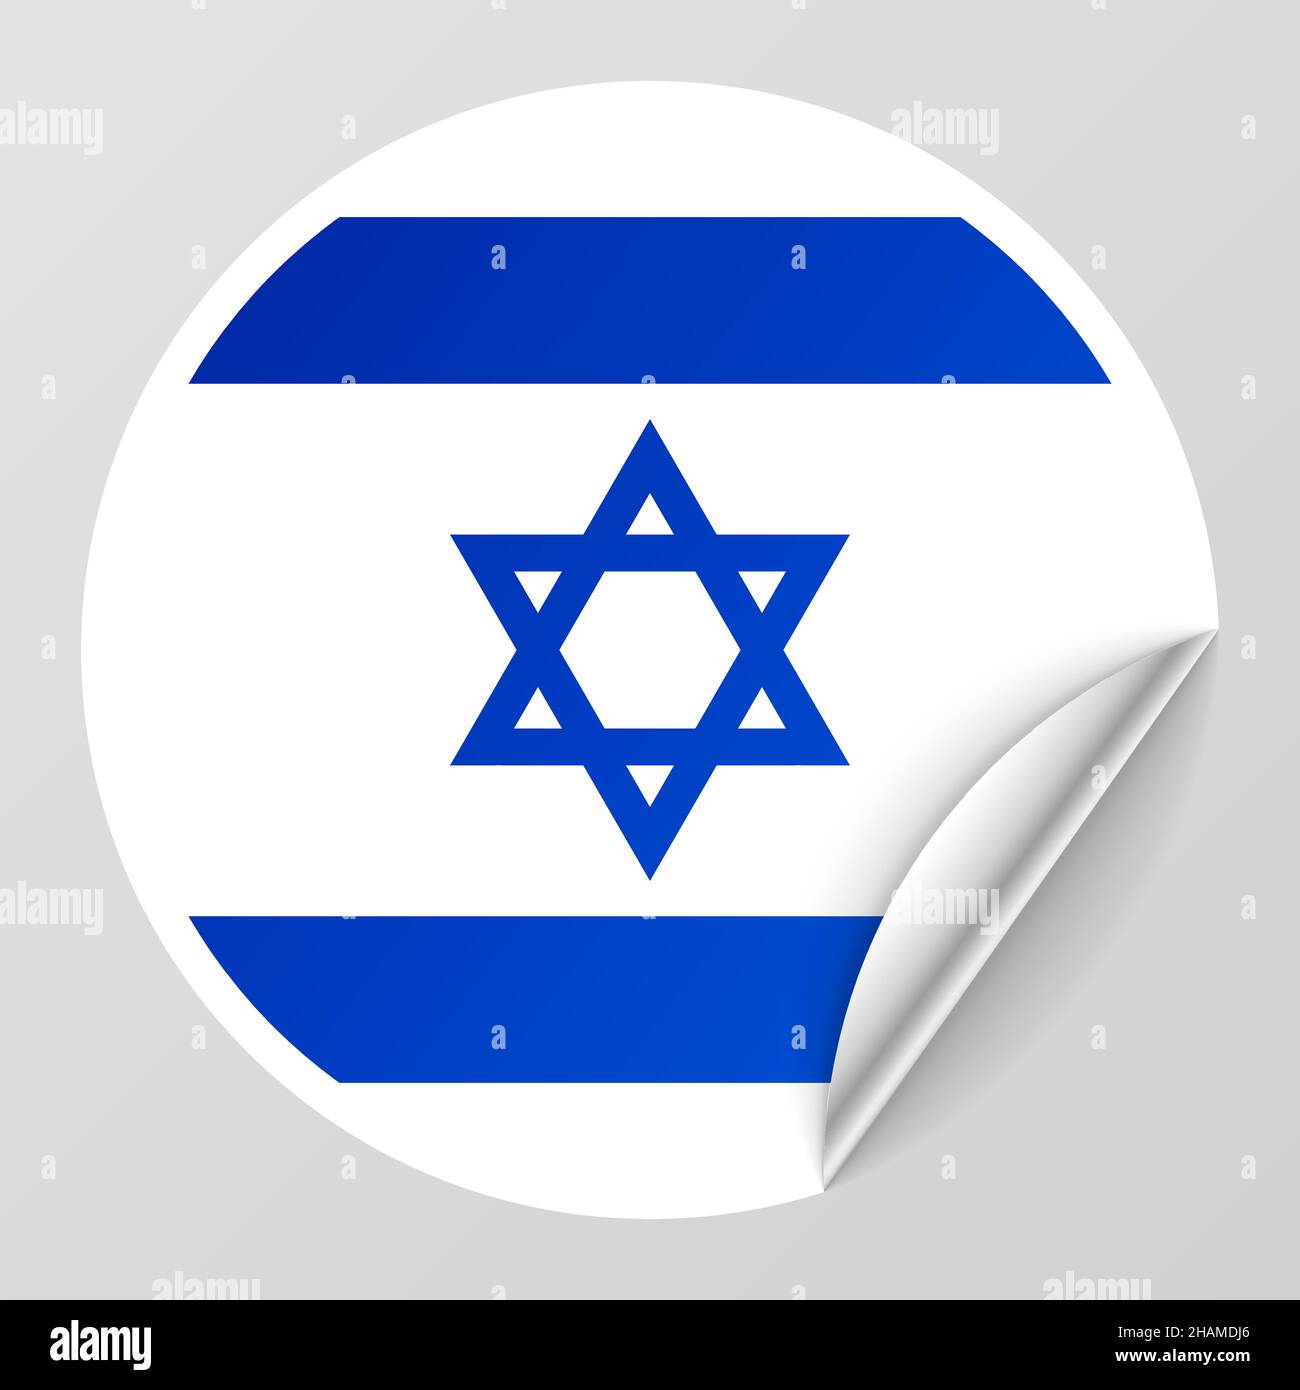 EPS10 Vektor Patriotischer Hintergrund mit Israel Flaggen Farben. Ein Element der Wirkung für die Verwendung, die Sie daraus machen möchten. Stock Vektor